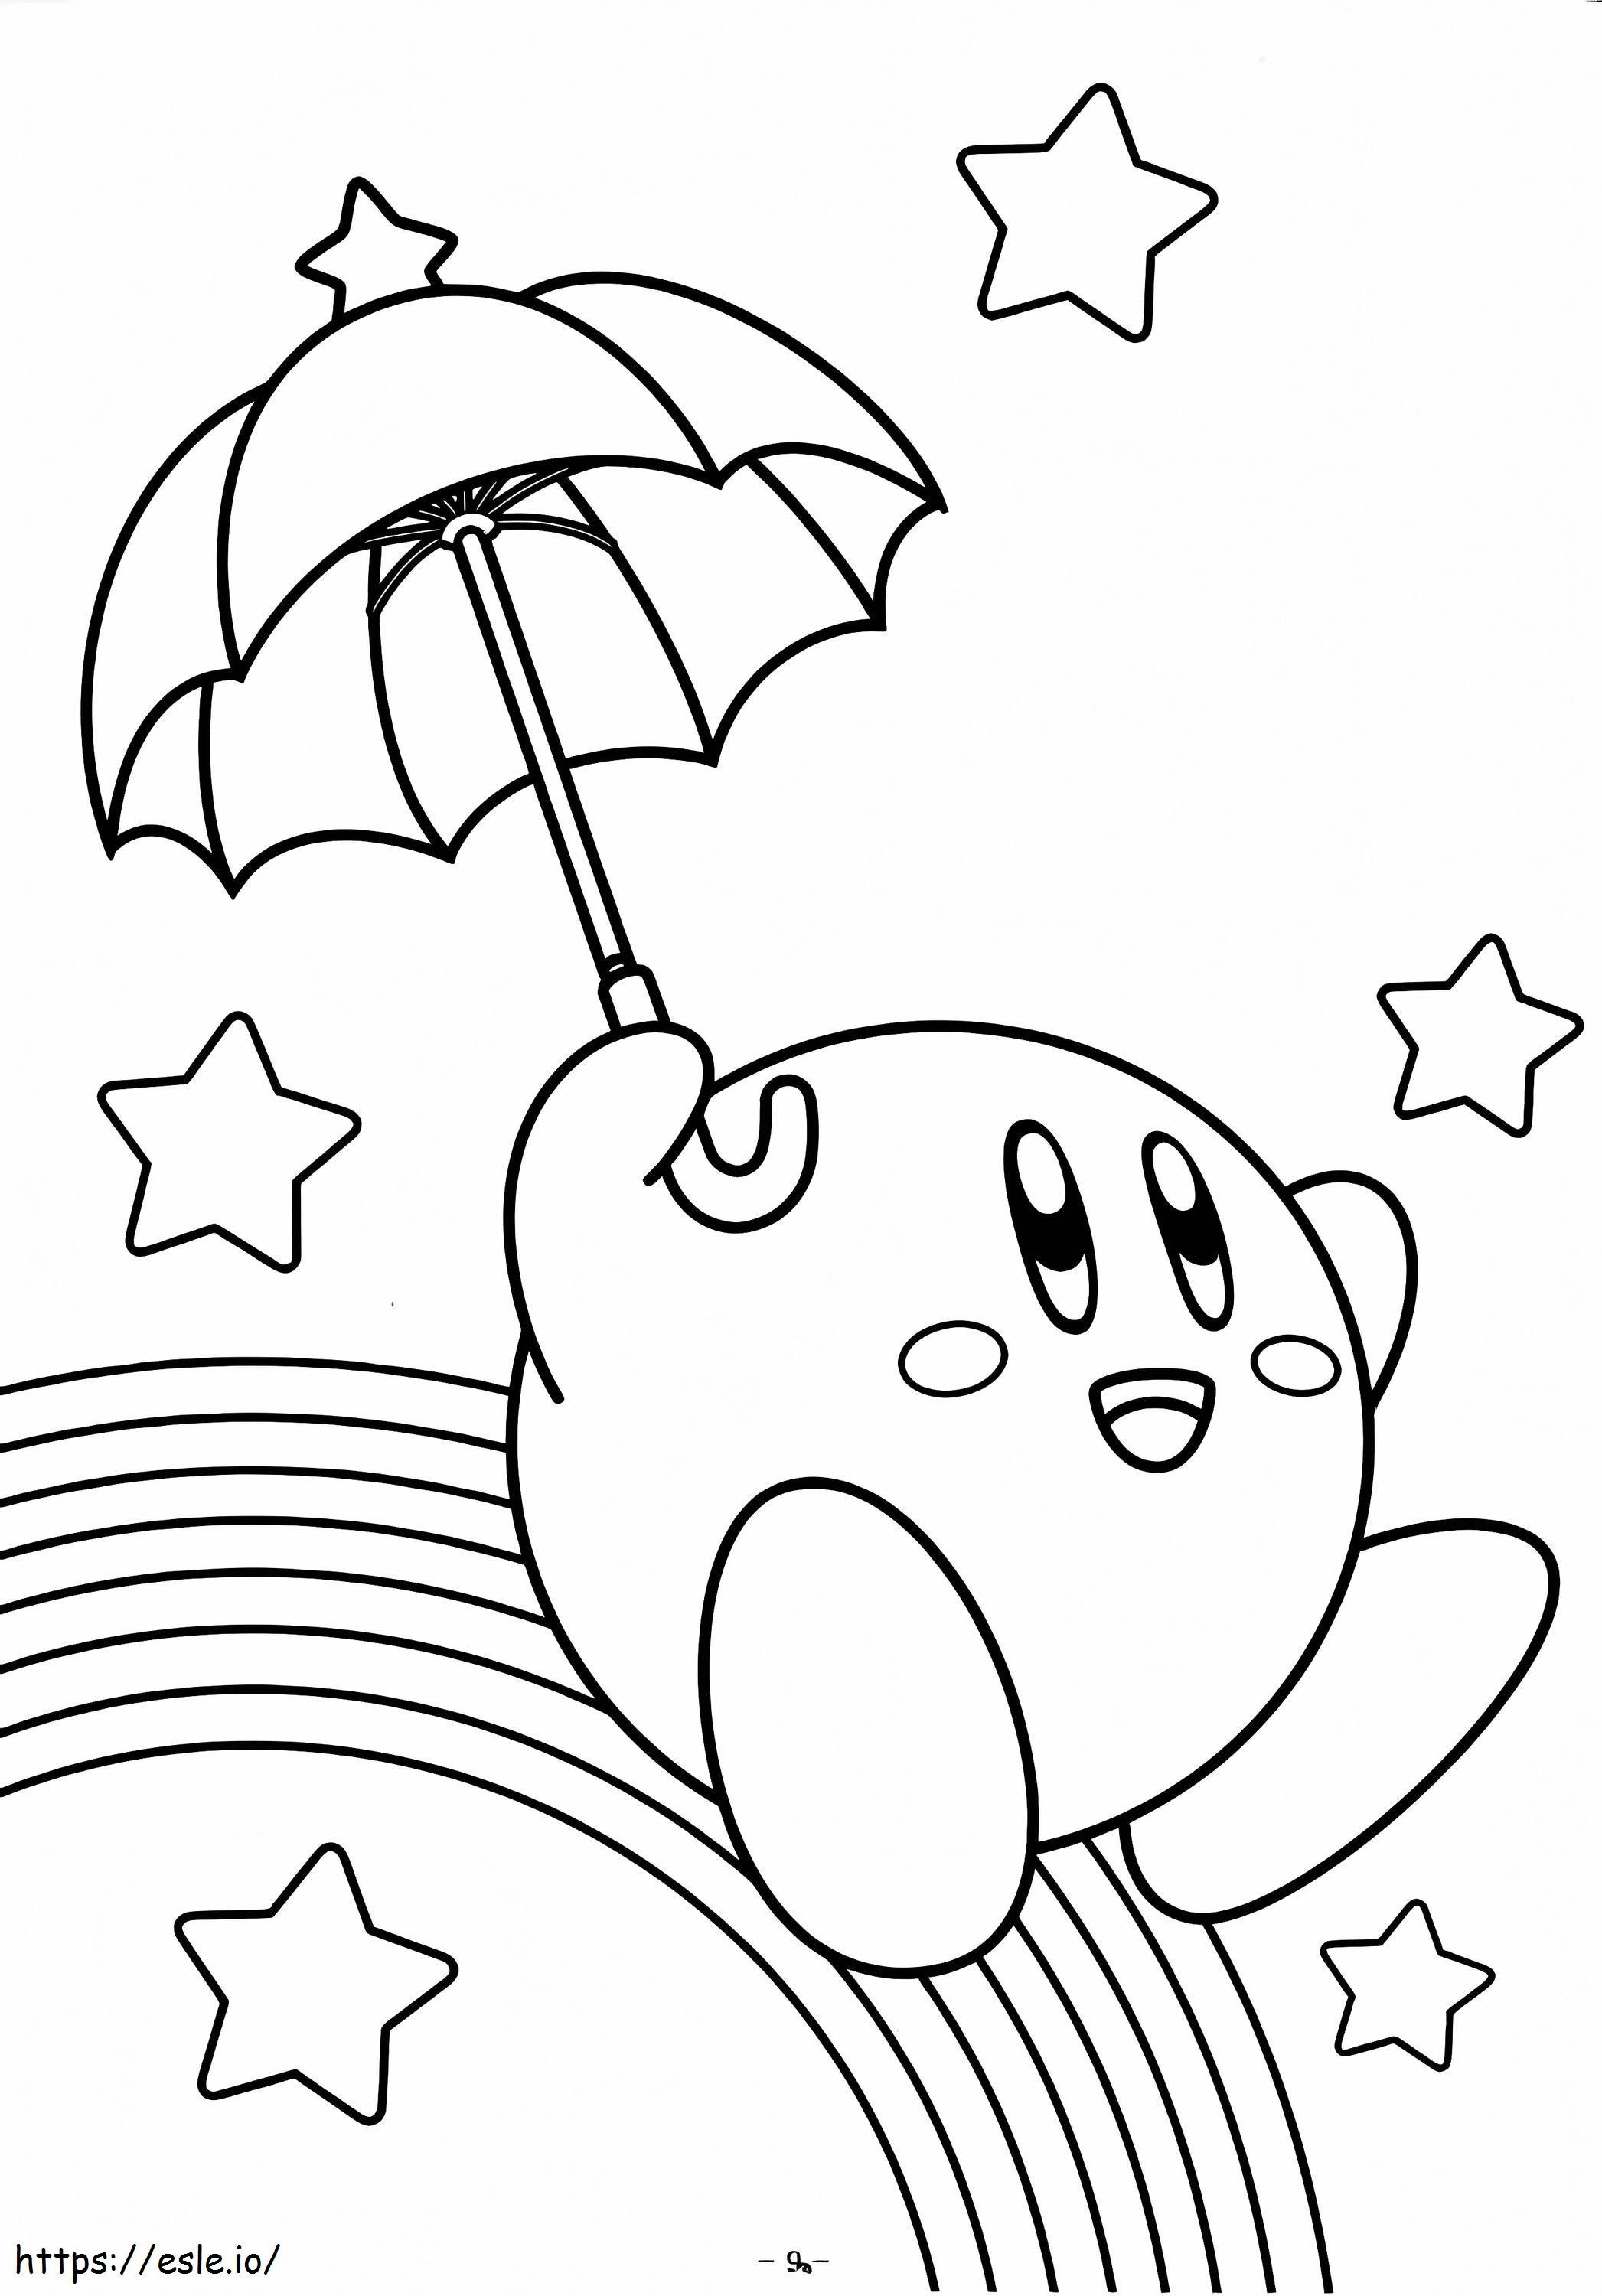 Kirby divertido segurando guarda-chuva com estrelas para colorir